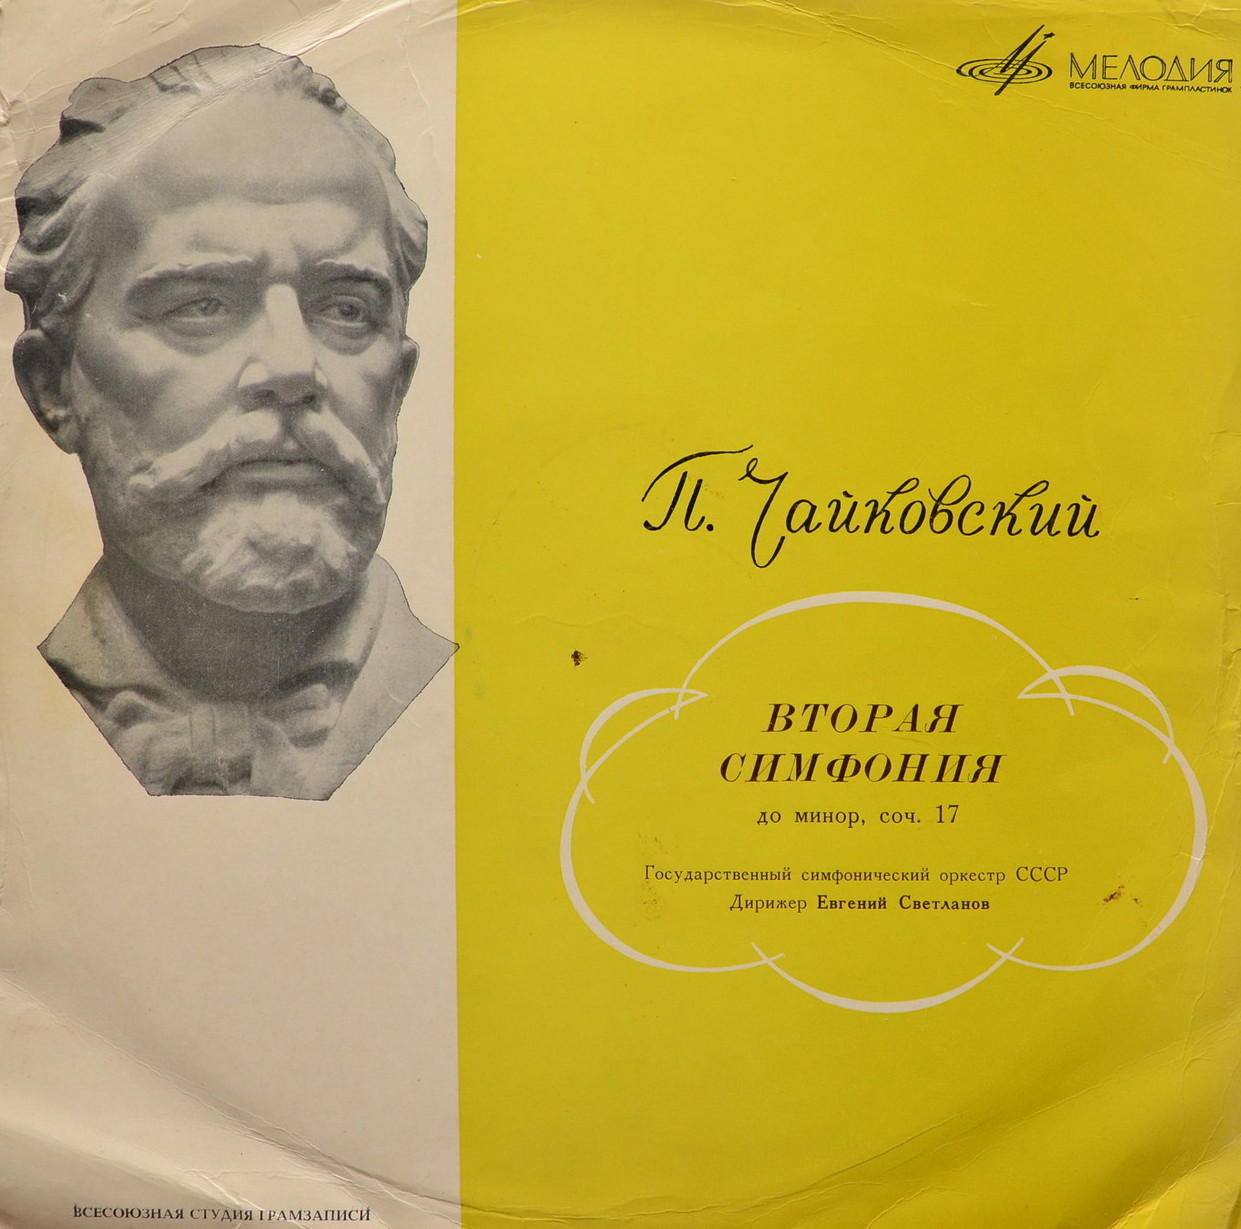 П. Чайковский: Симфония № 2 (Е. Светланов)